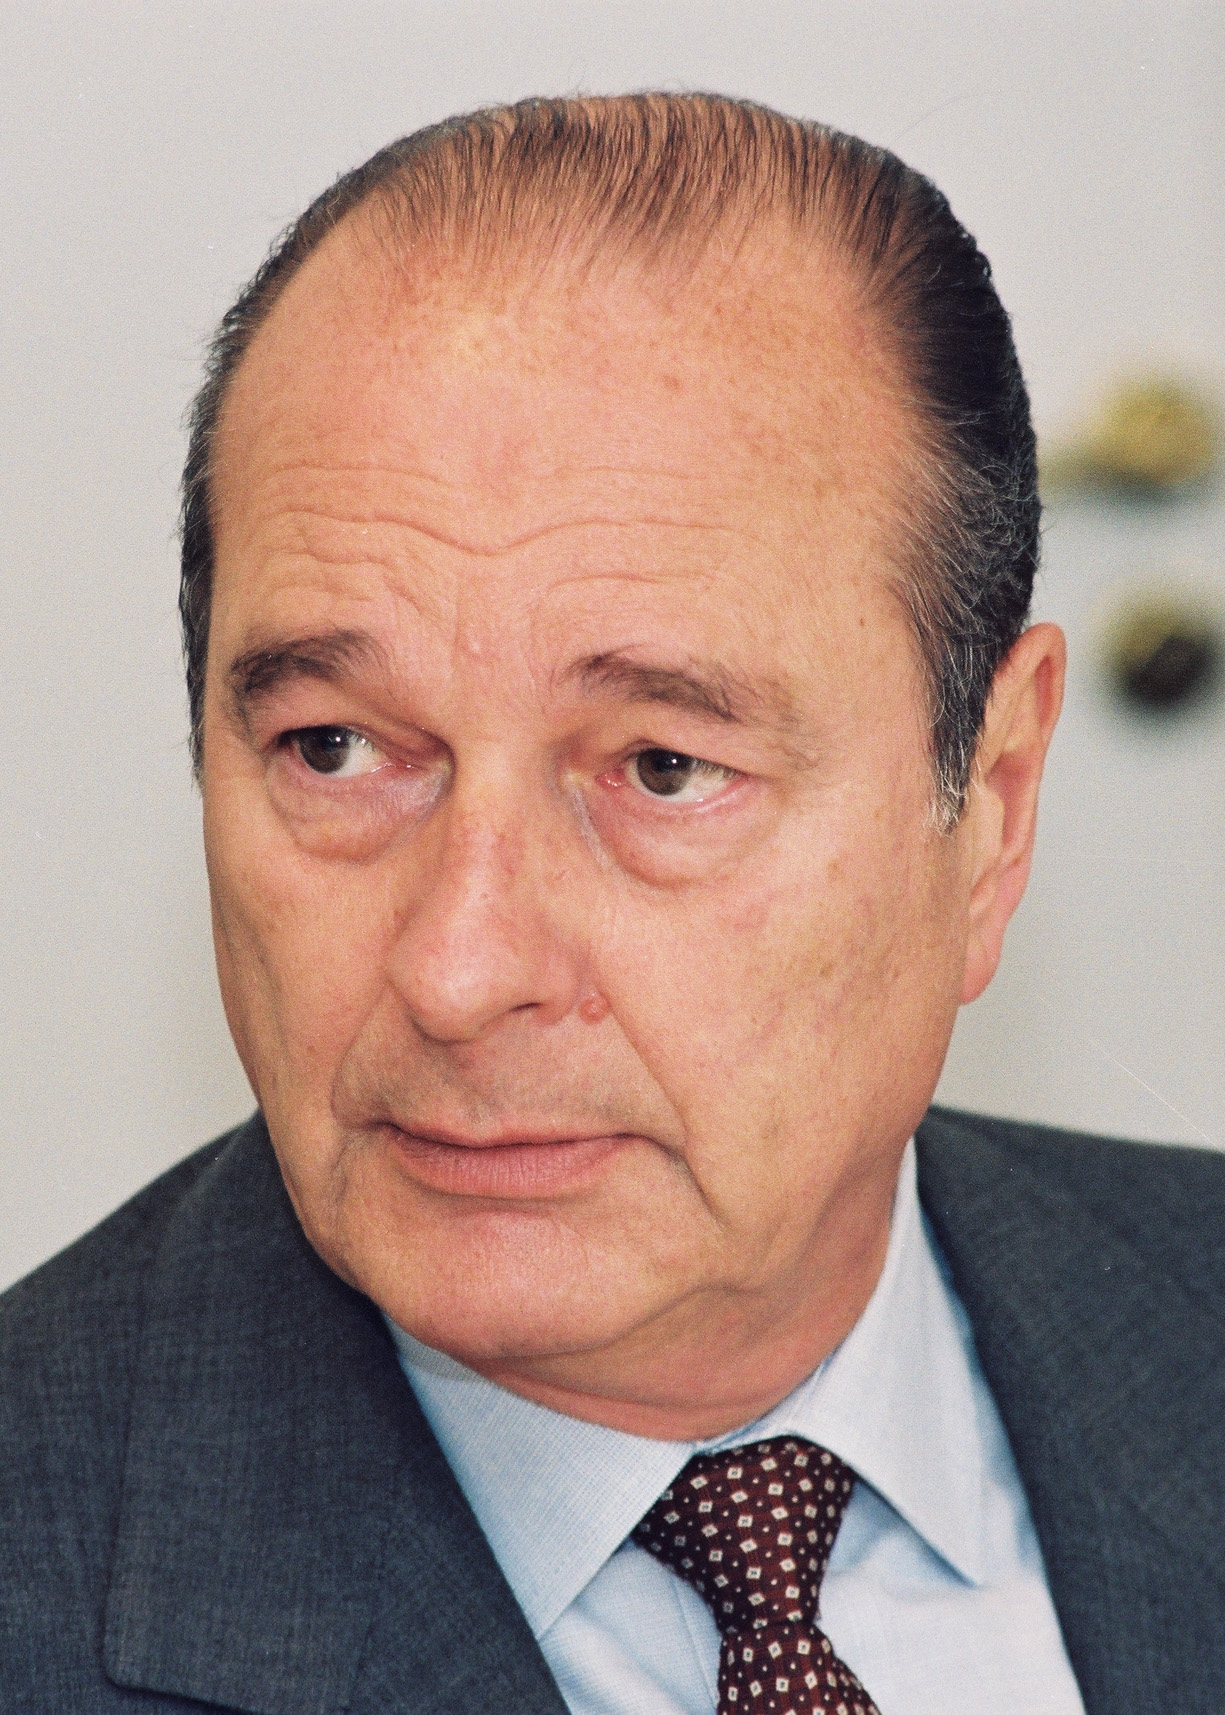 auteur Jacques Chirac de la citation Pour la première fois, l'humanité institute un véritable instrument Kyoto Protocole de gouvernance mondiale, "..." en agissant ensemble, en construisant cet instrument sans précédent, la première composante d'une gouvernance mondiale authentique, nous travaillons pour le dialogue et la paix.